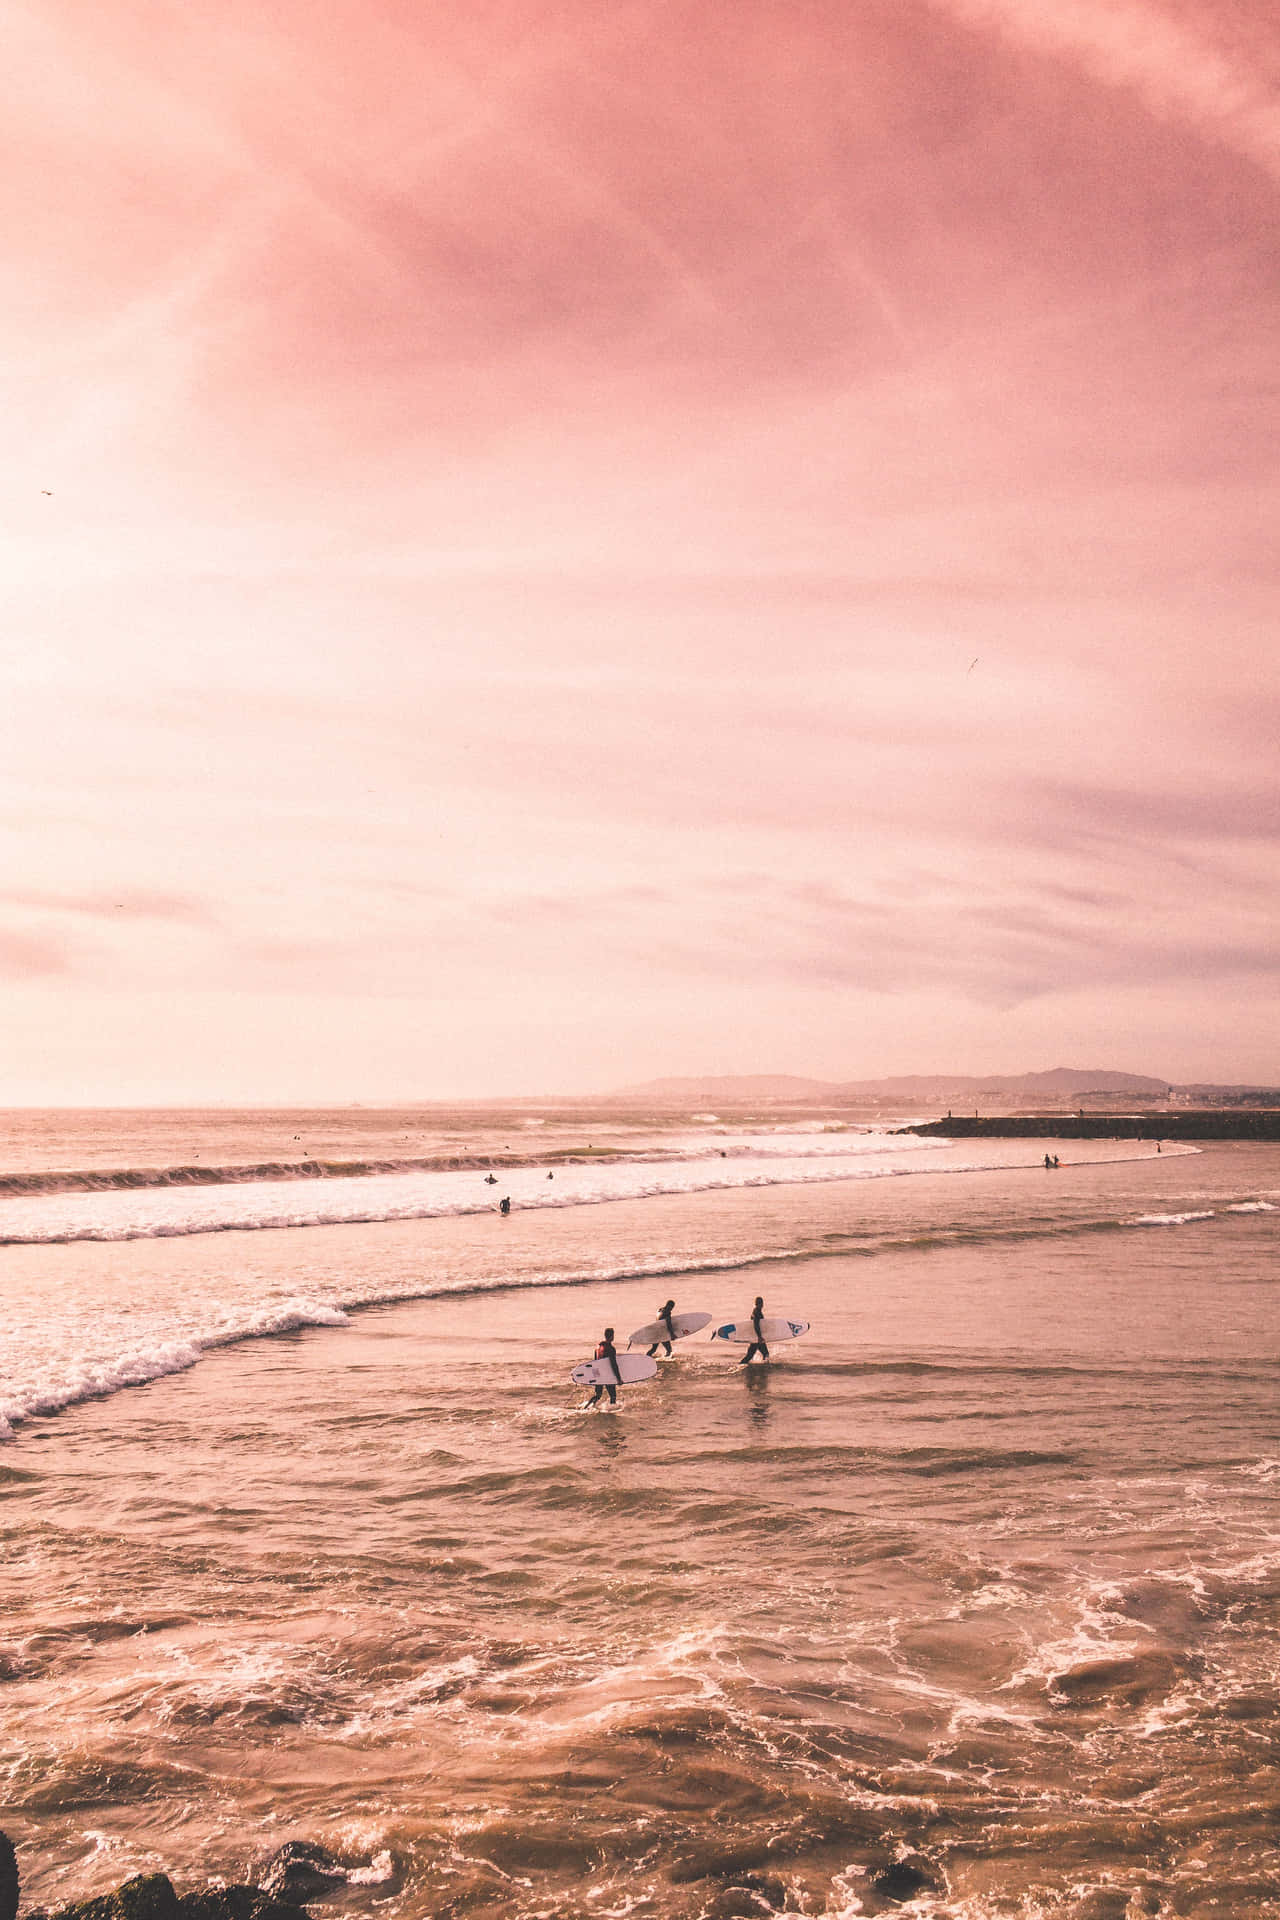 Ungrupo De Personas Está Surfeando En El Océano. Fondo de pantalla